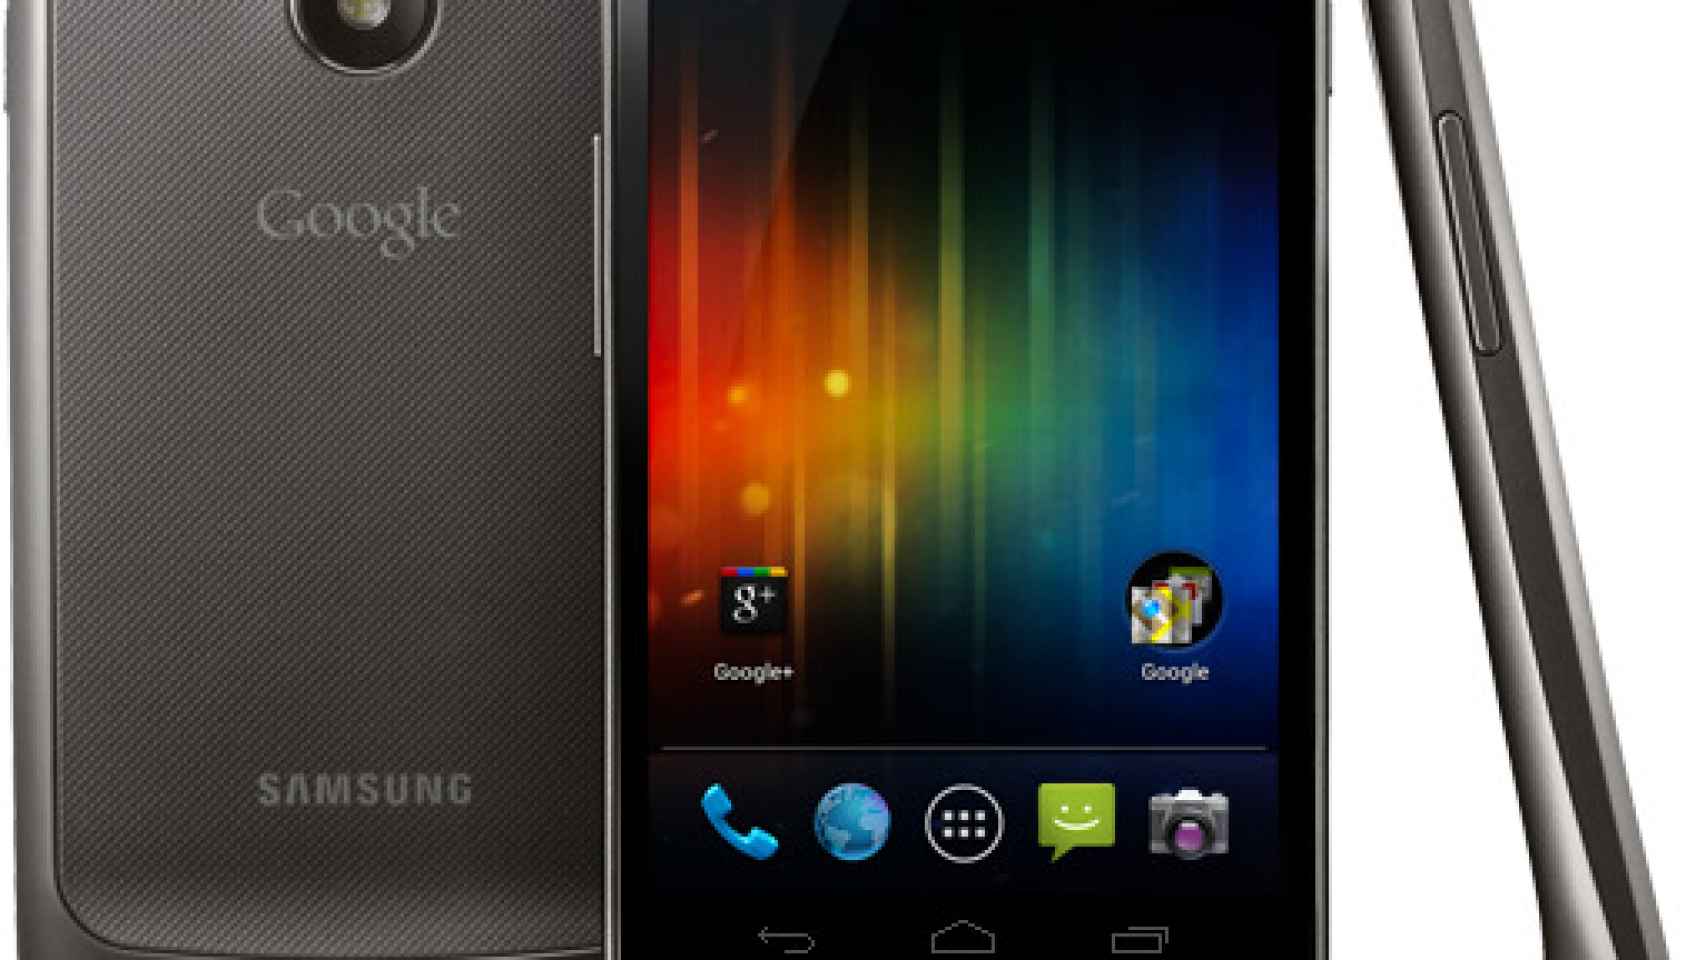 Videoreview y análisis del Samsung Galaxy Nexus, el último hijo de Google